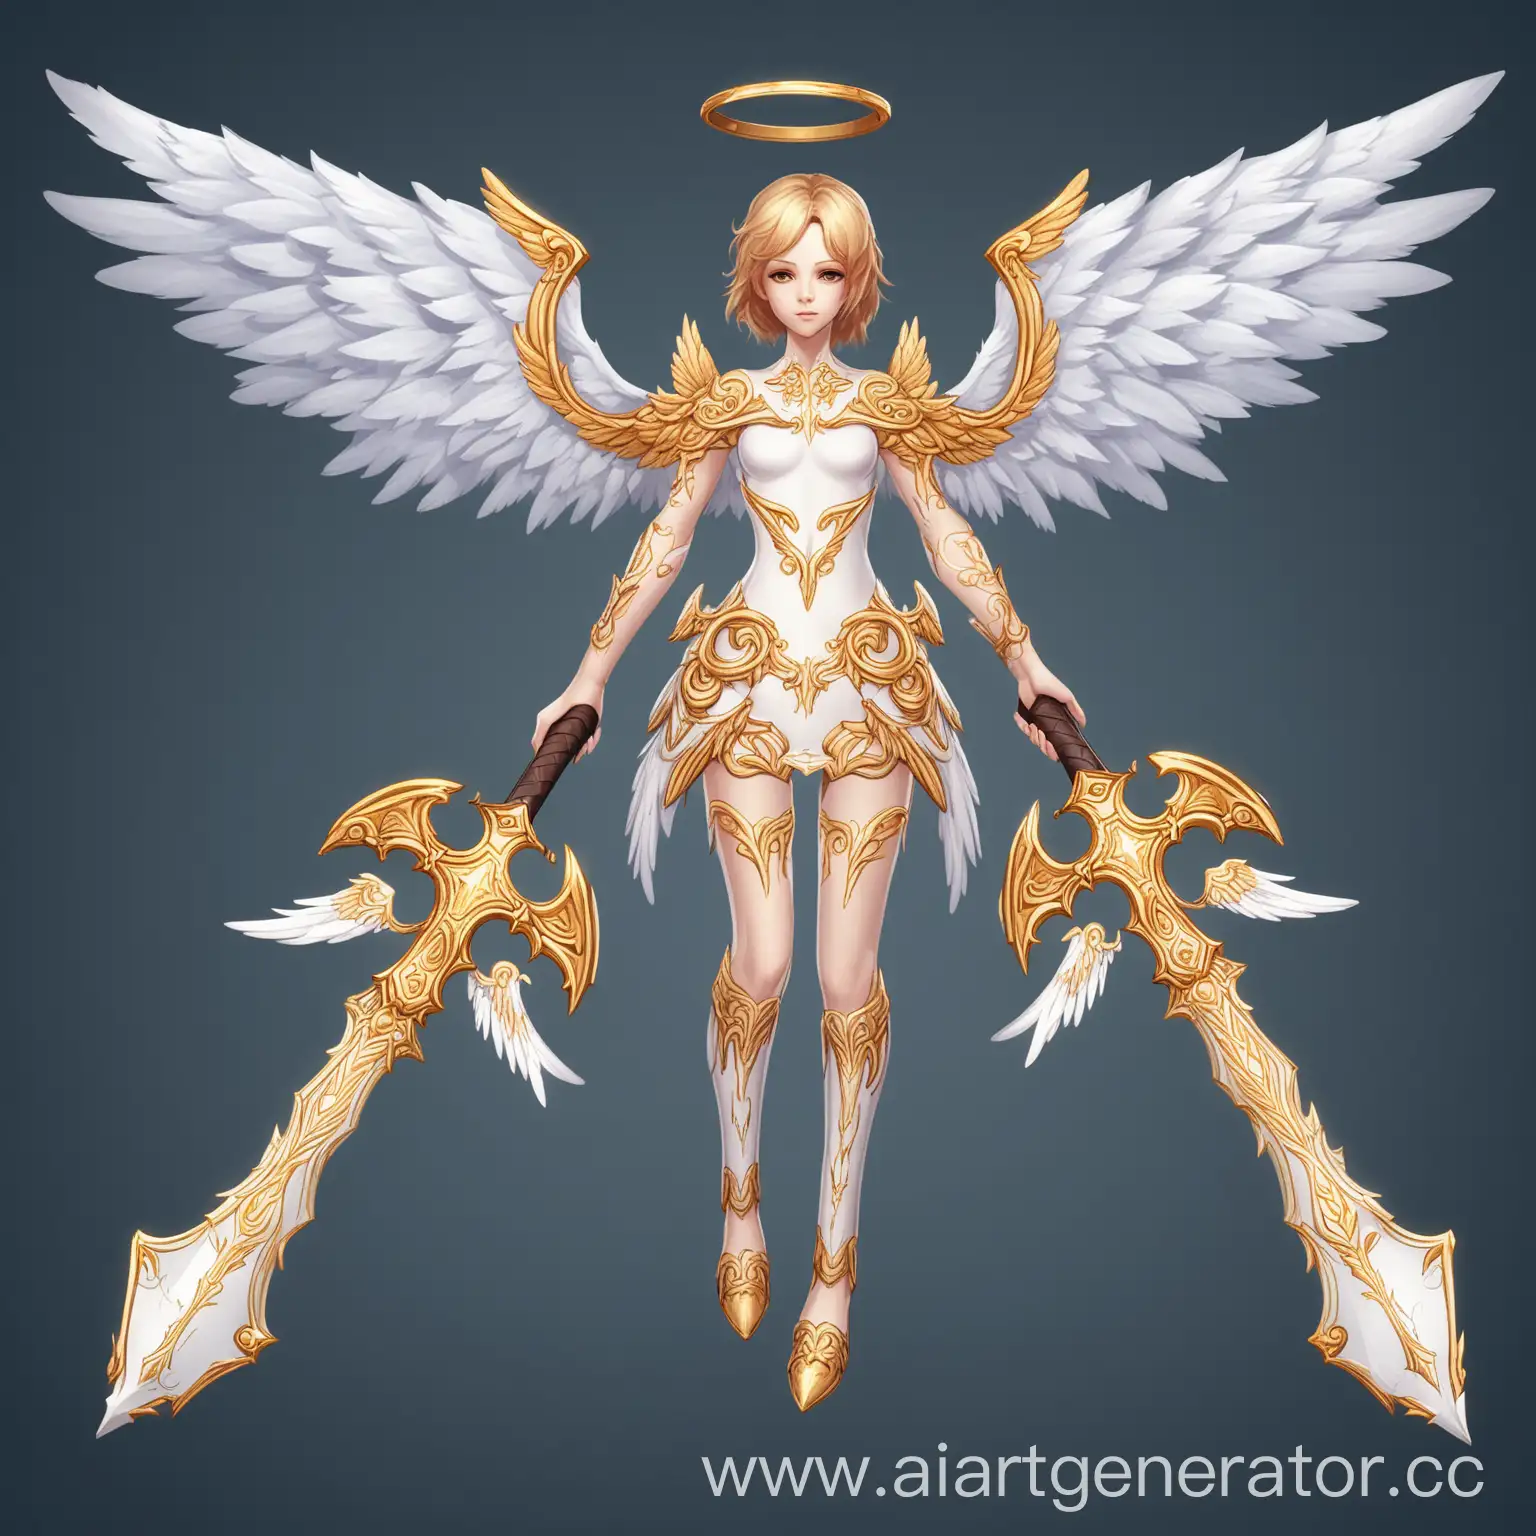 Angel-Wings-Weapon-Skin-Celestial-Serenity-in-Battle